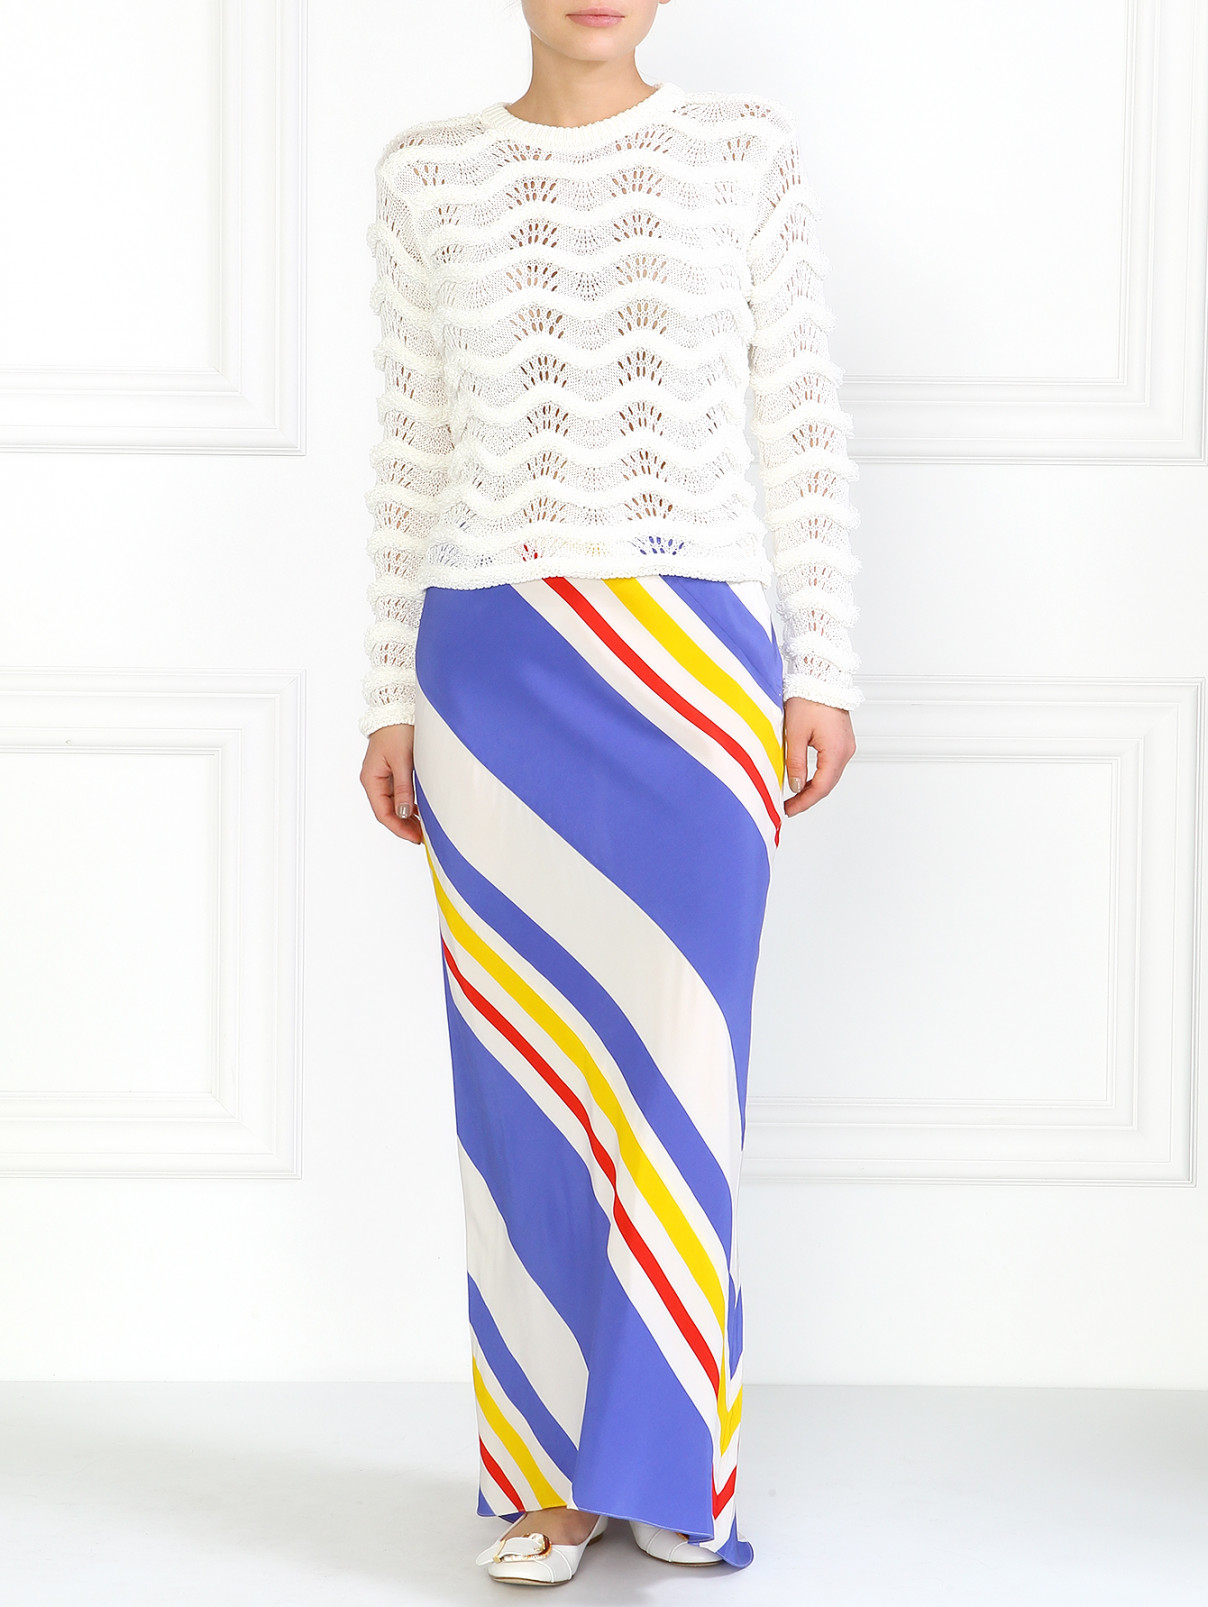 Макси-юбка в полоску Juicy Couture  –  Модель Общий вид  – Цвет:  Узор